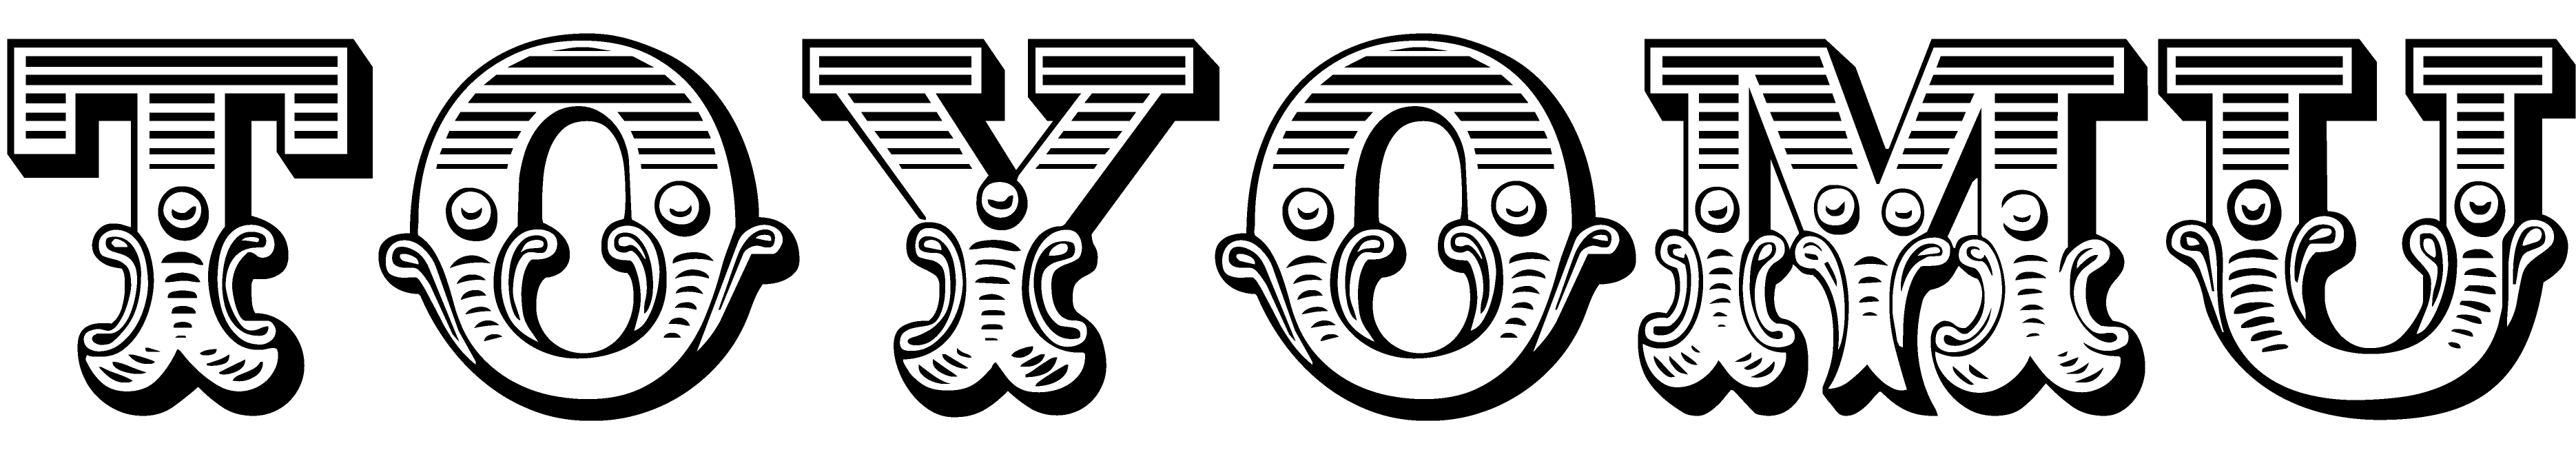 TOYOMU logo_black